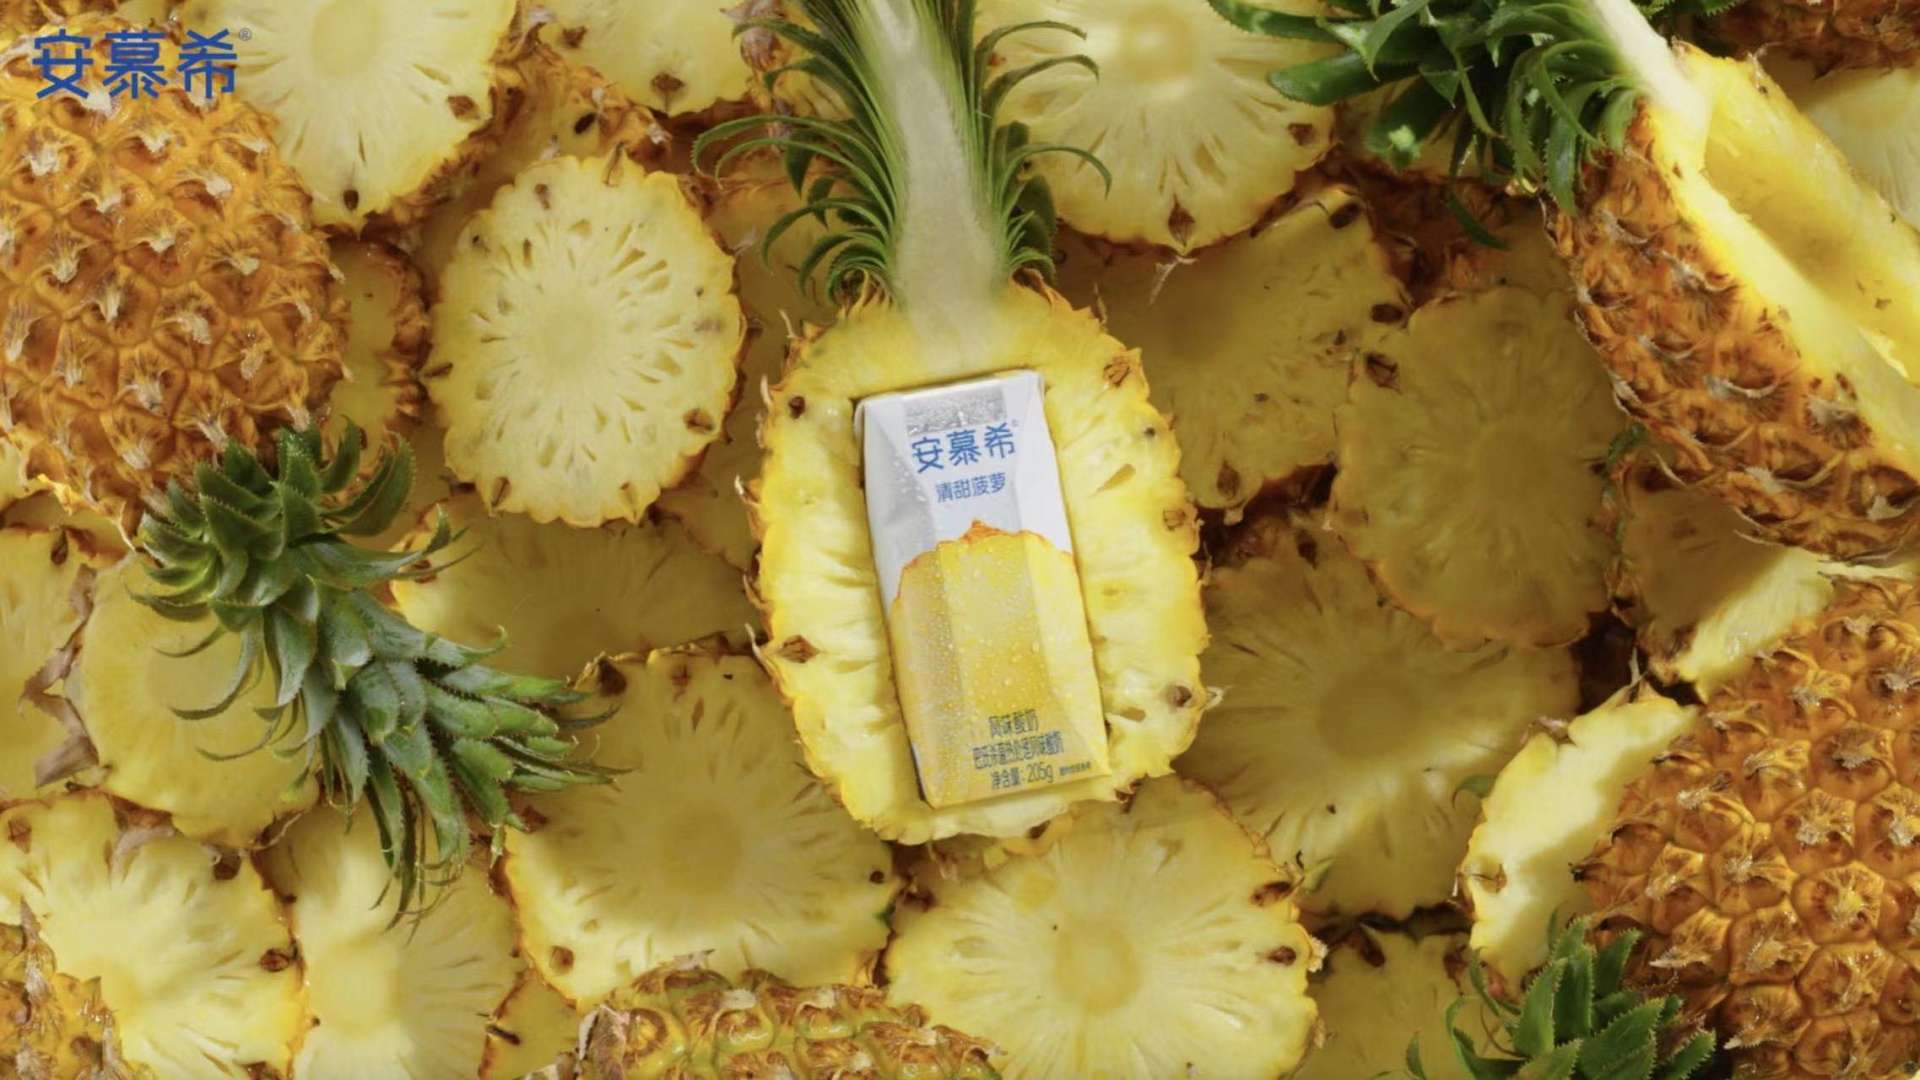 安慕希菠萝酸奶产品片